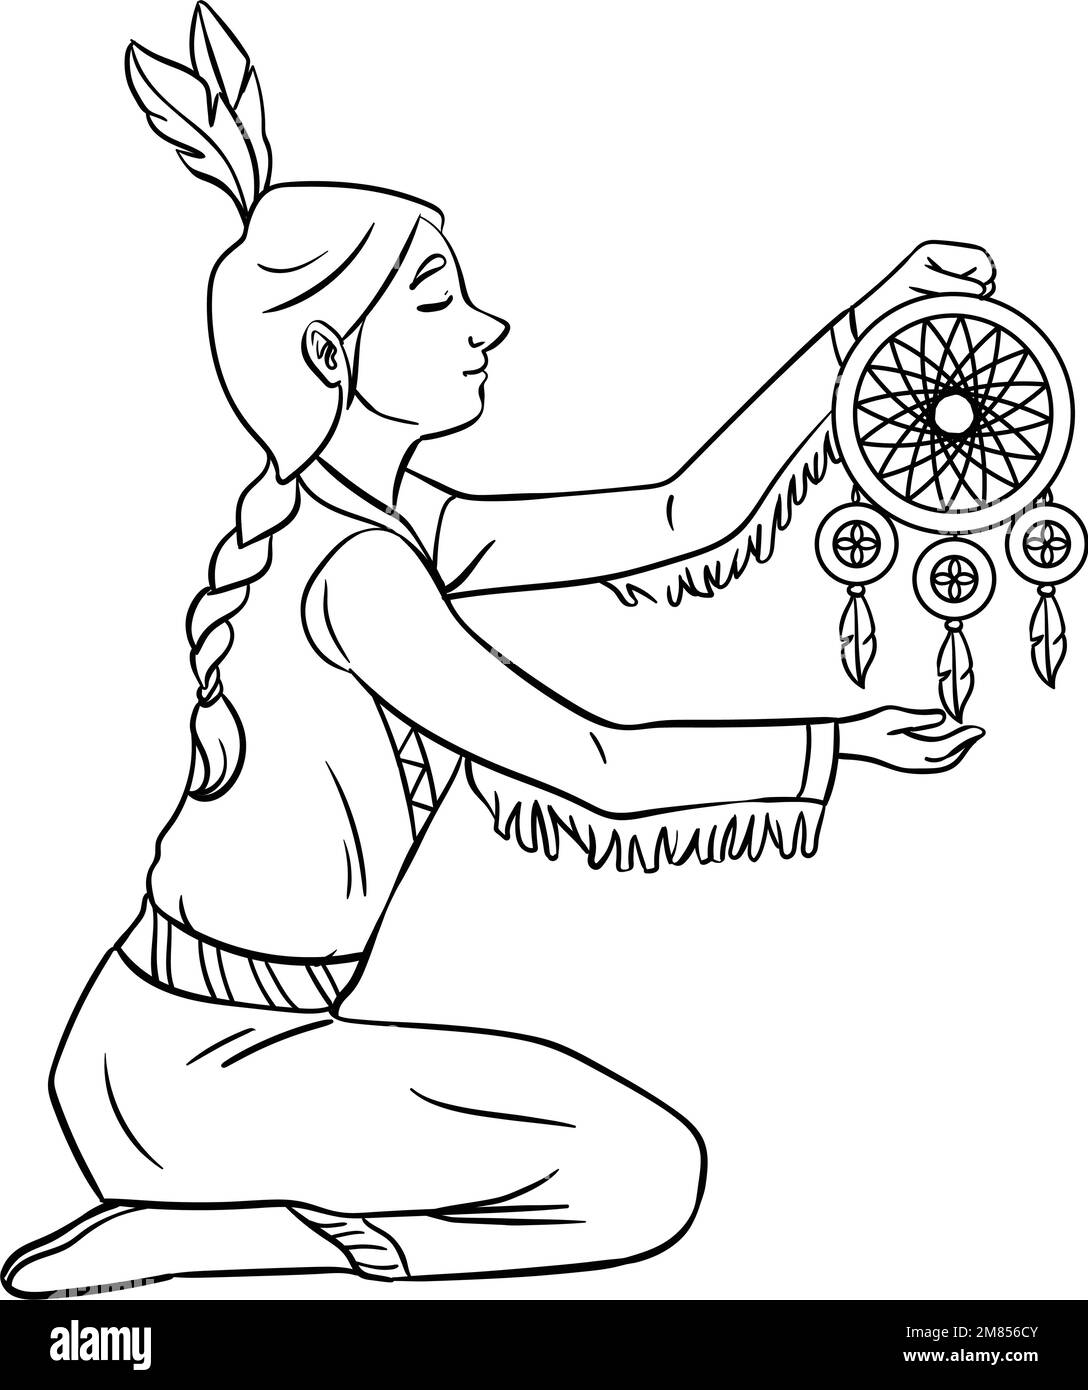 Indian girl black-white drawing Leggings by anniesko